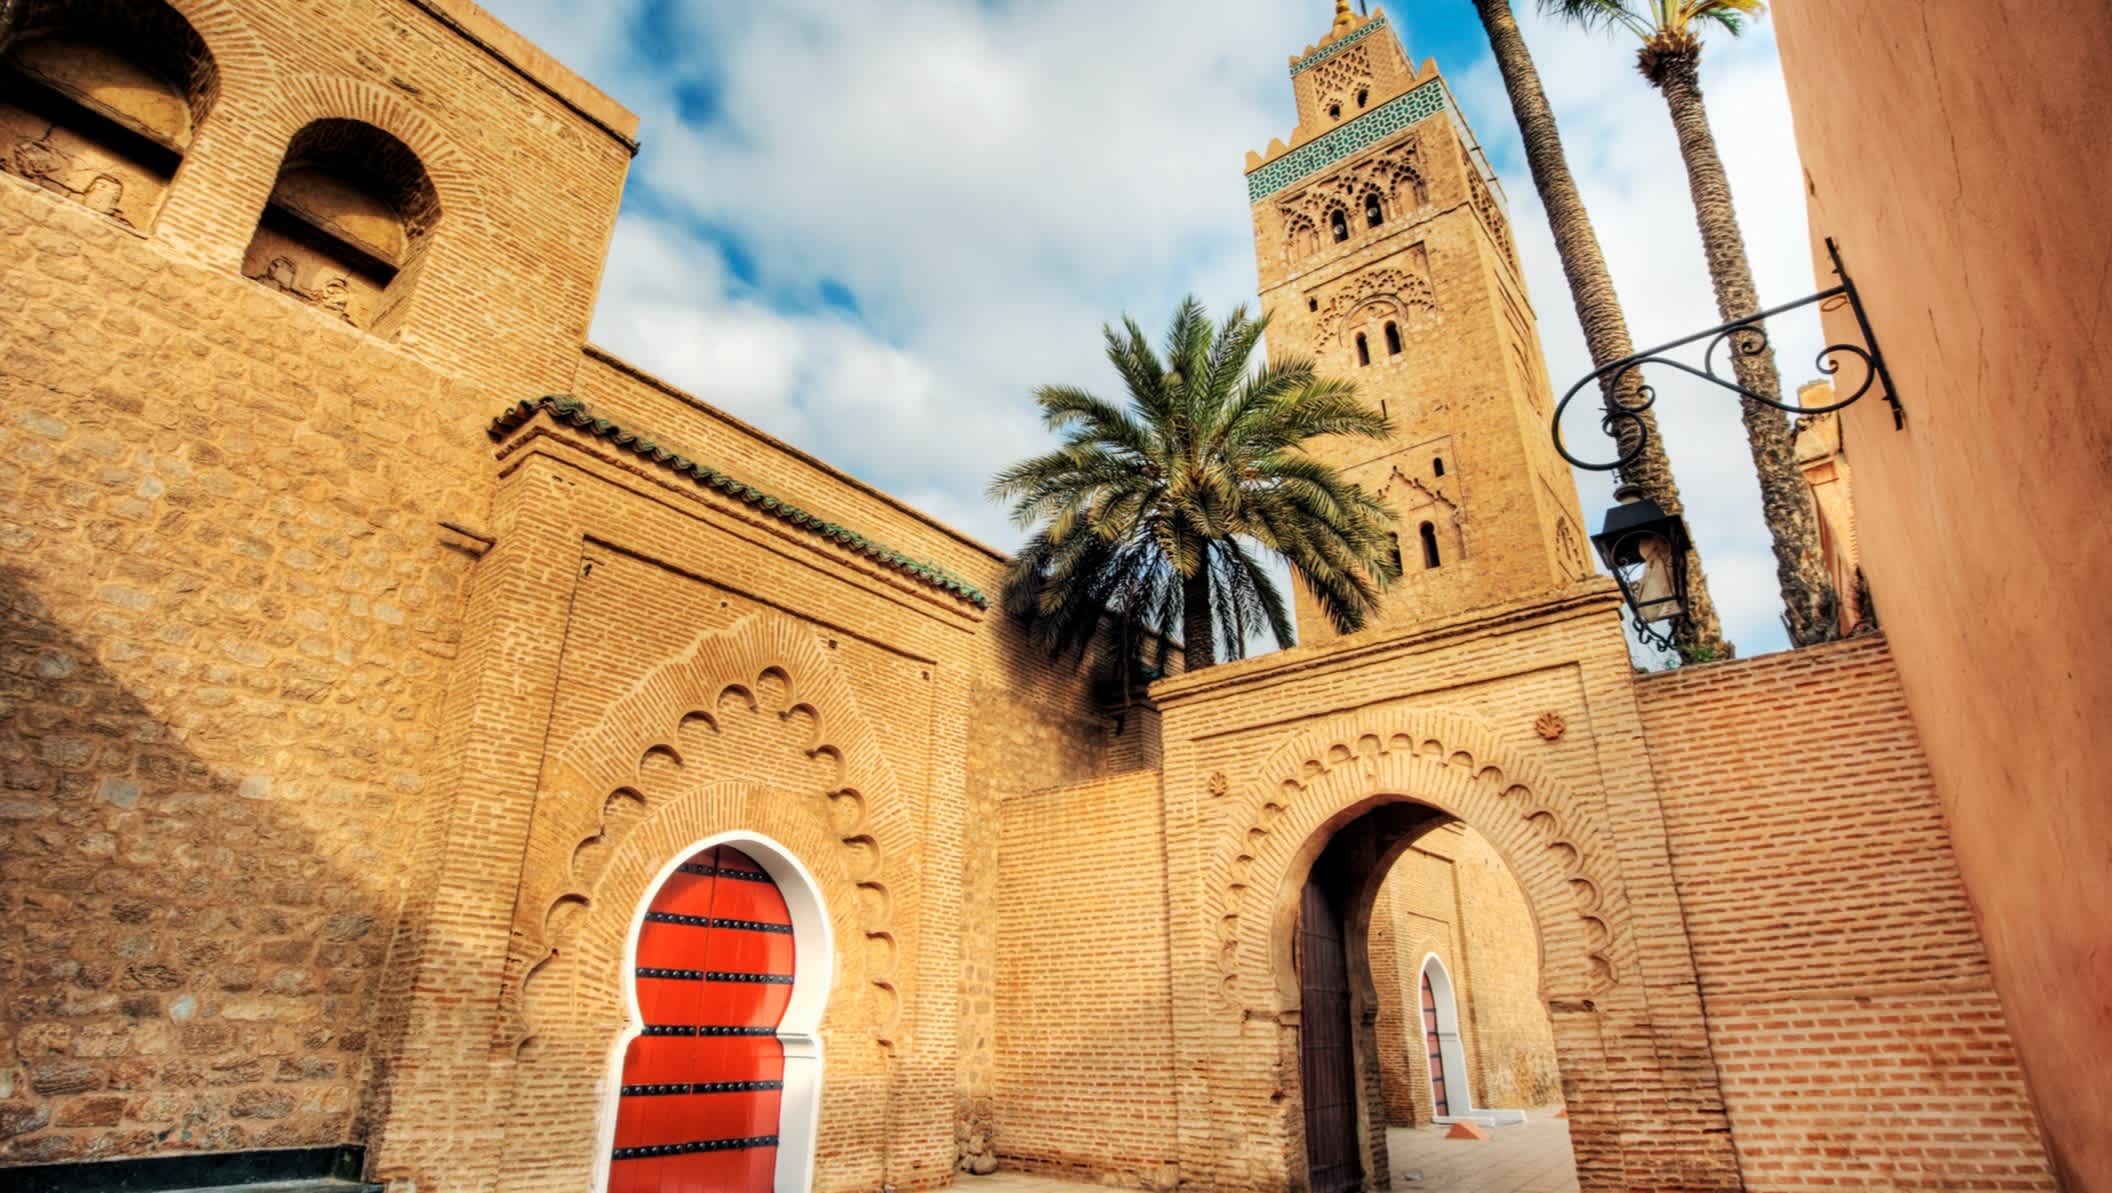 Bâtiment historique Mosquée Koutoubia avec palmiers, Maroc